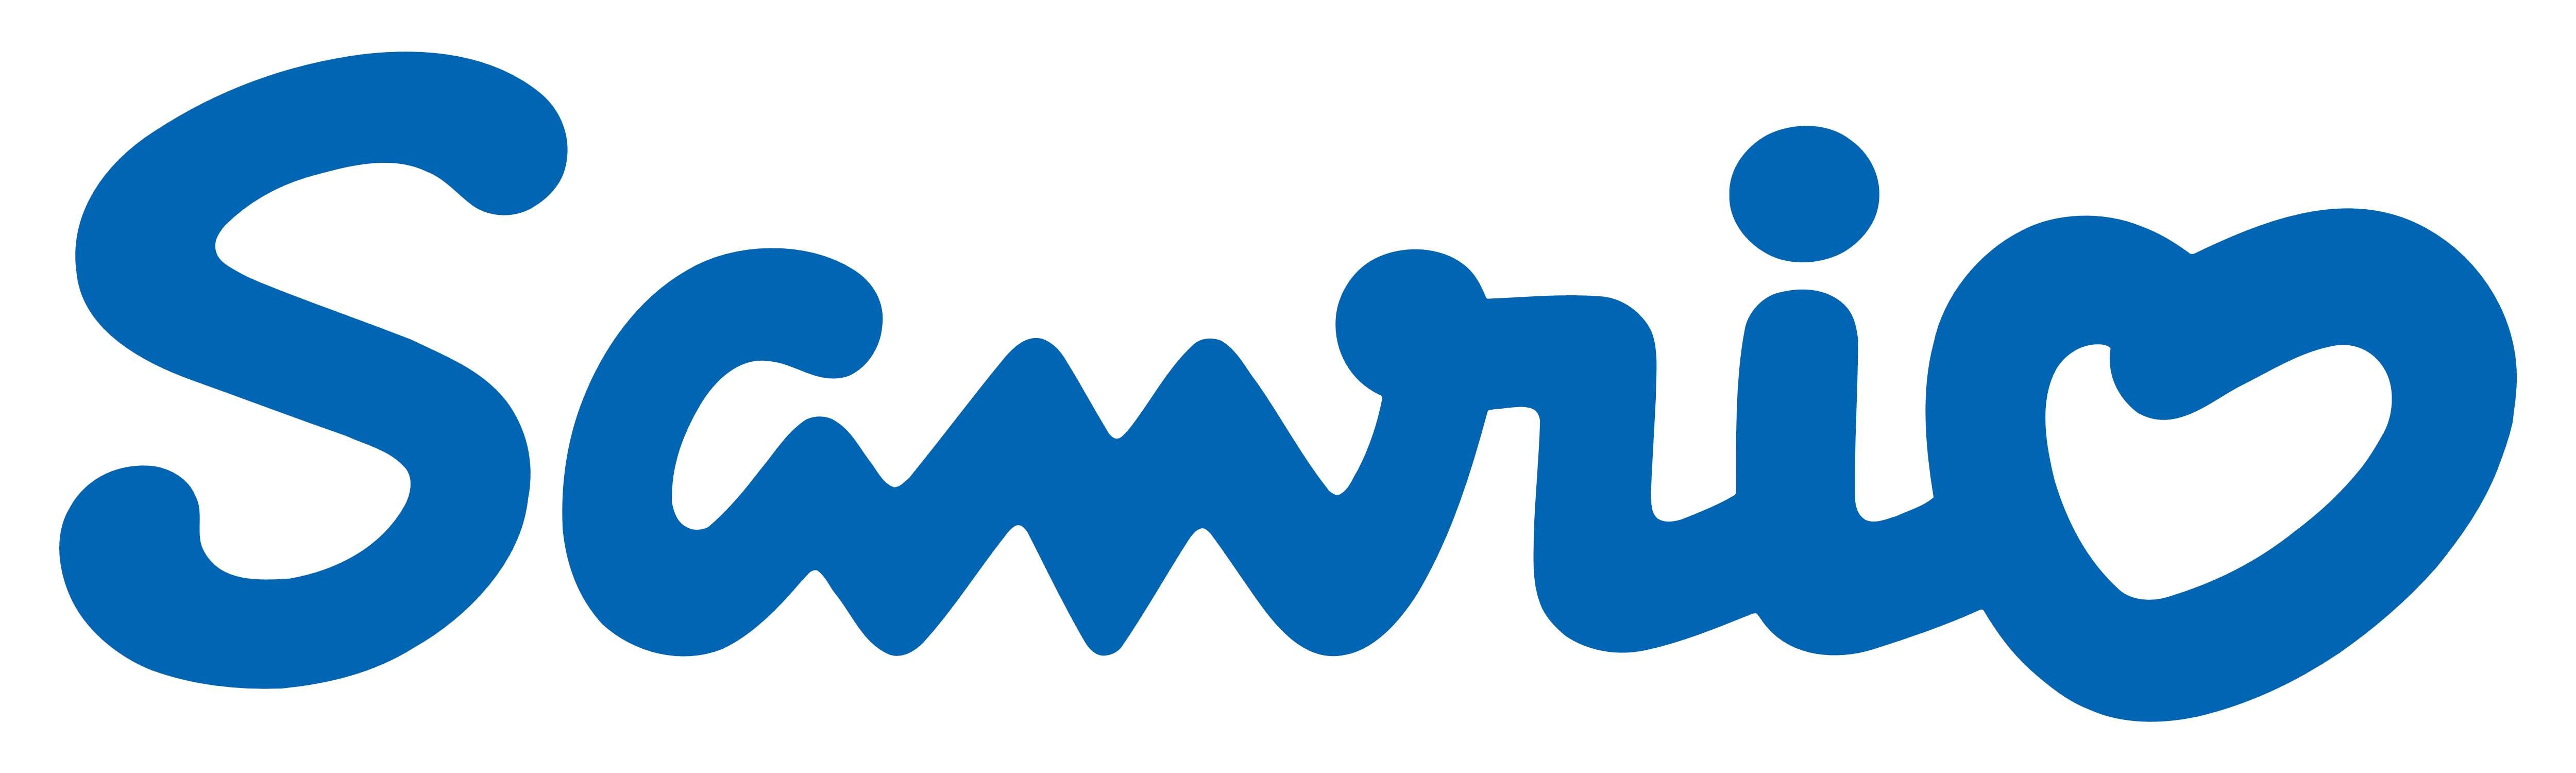 Sanrio-logo